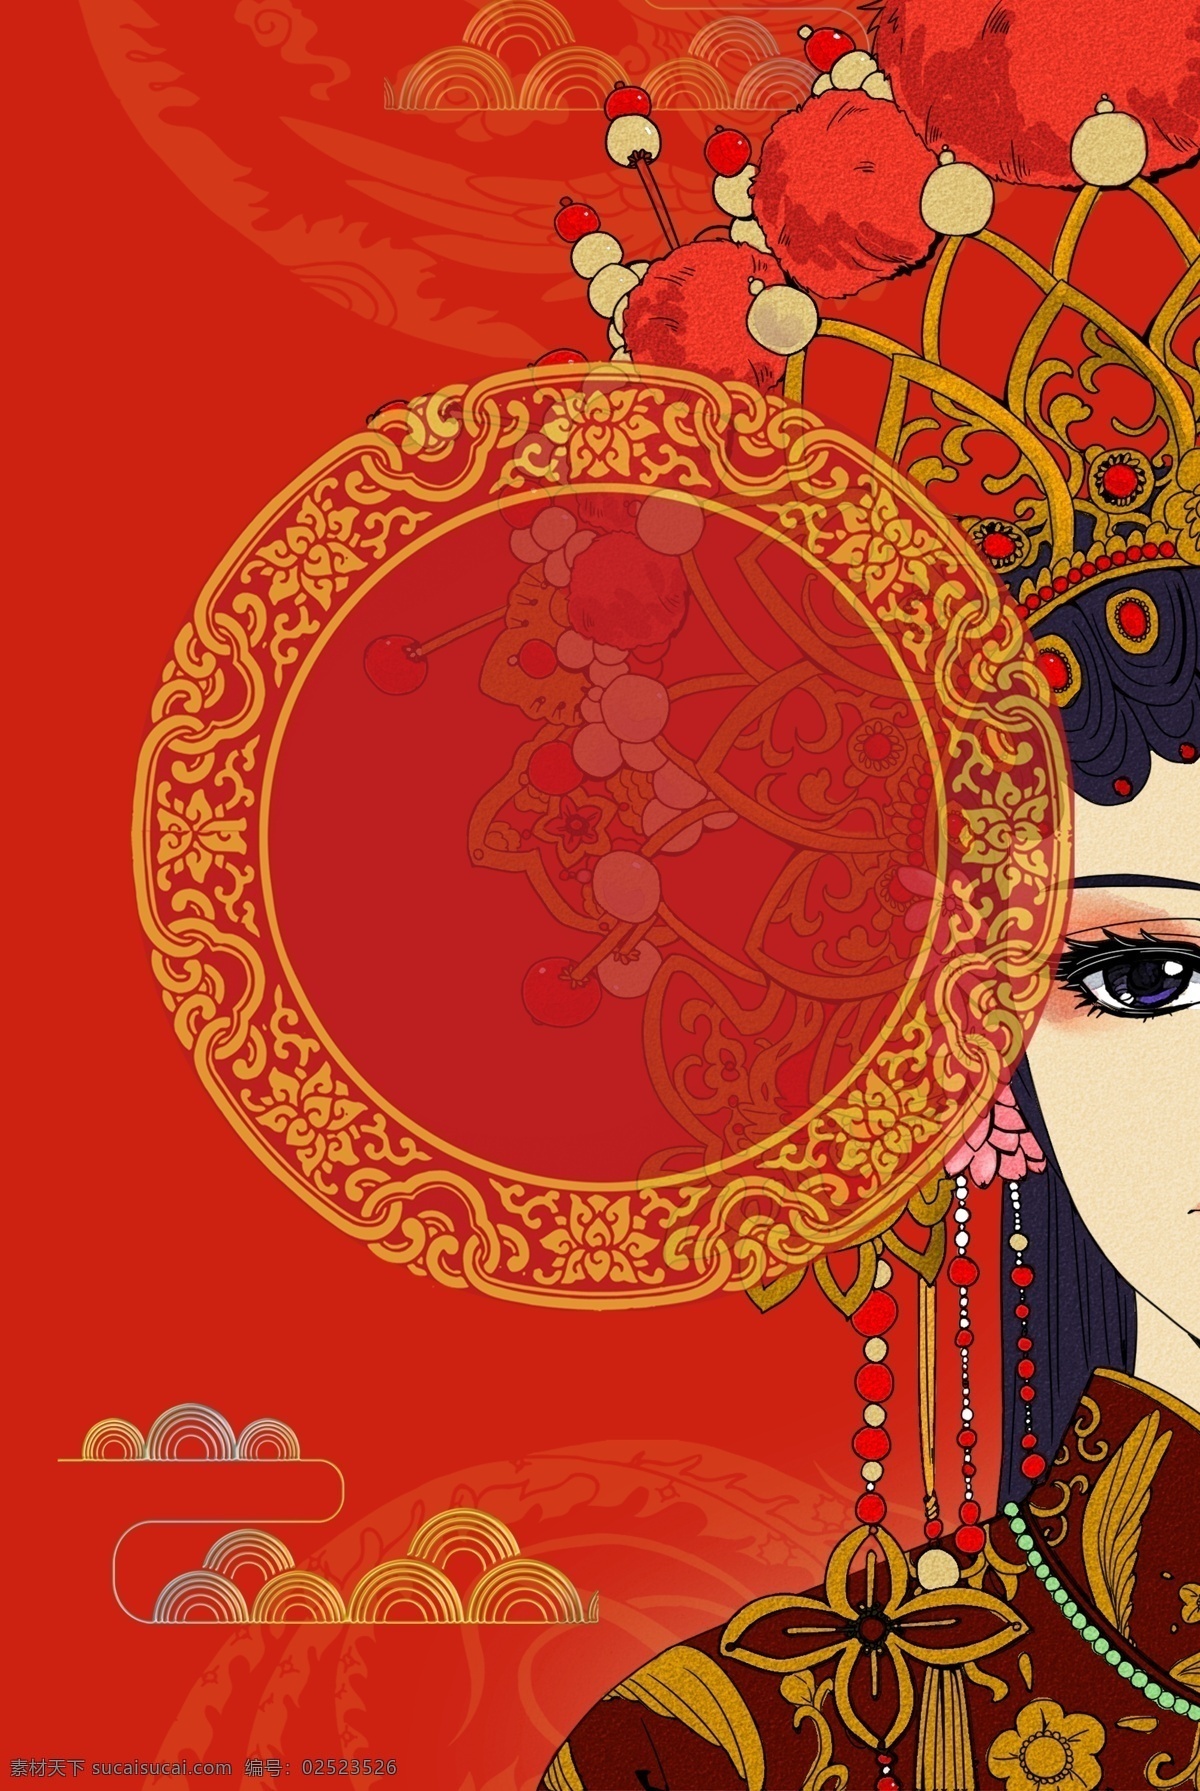 京剧 社团 红色 喜庆 背景 京剧社团 婚礼 红色婚礼 秀禾服 红色背景 手绘